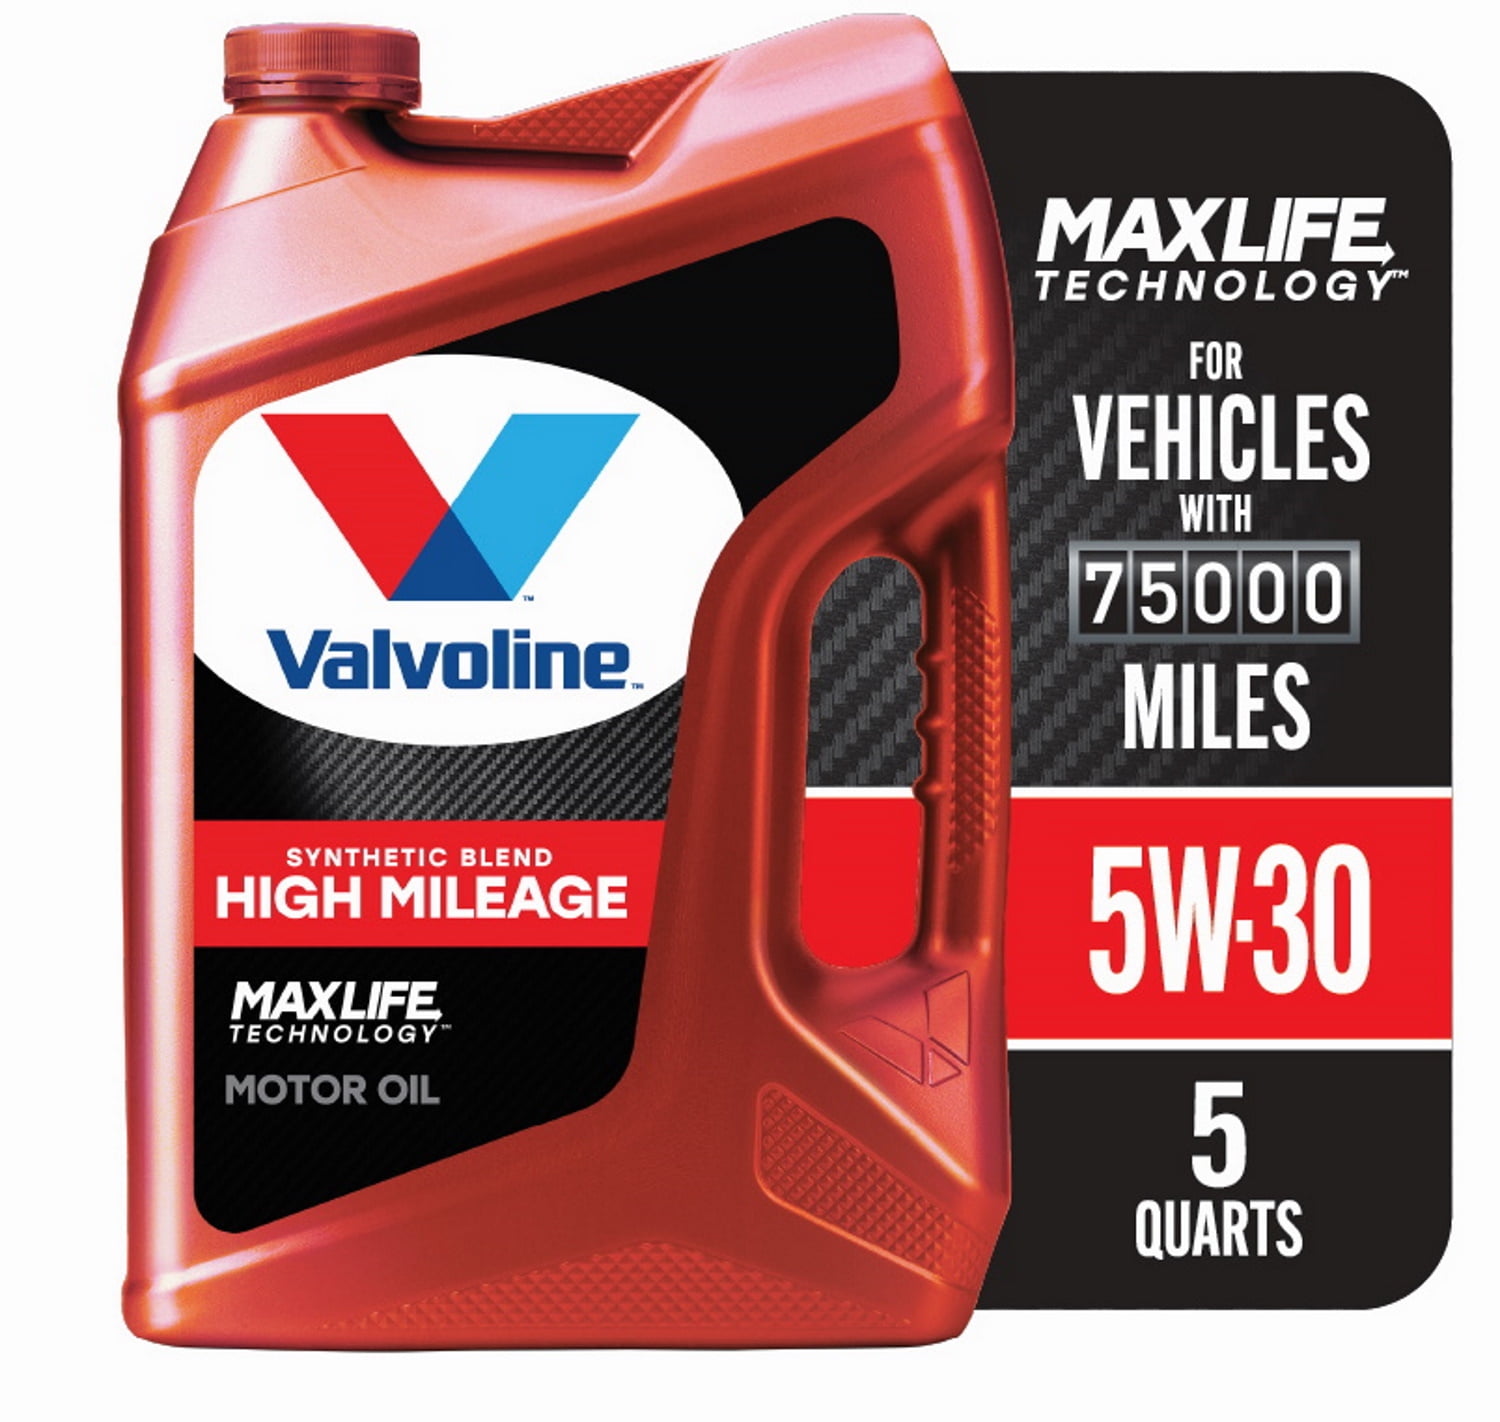 Valvoline Motor Oil, Full Synthetic, SAE 5W-30 - 1 US qt (946 ml)